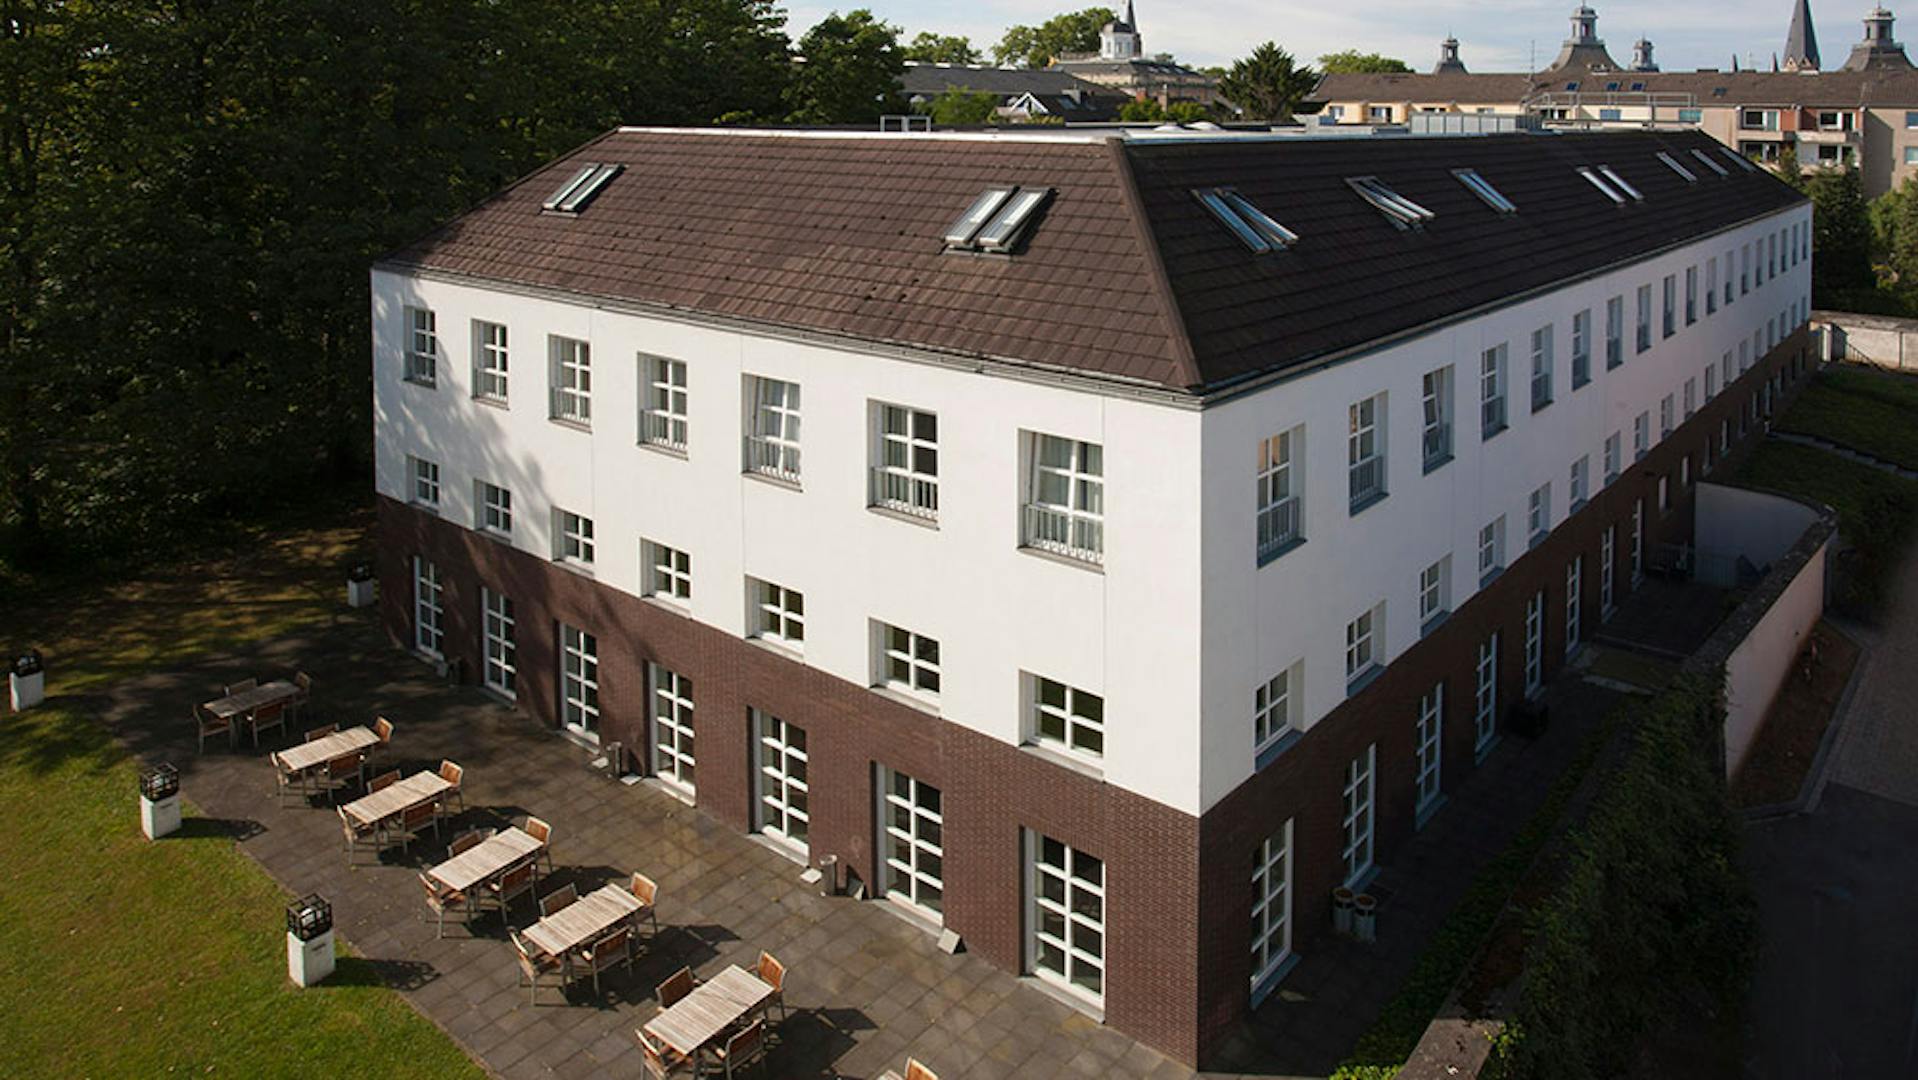 Universitätsclub Bonn